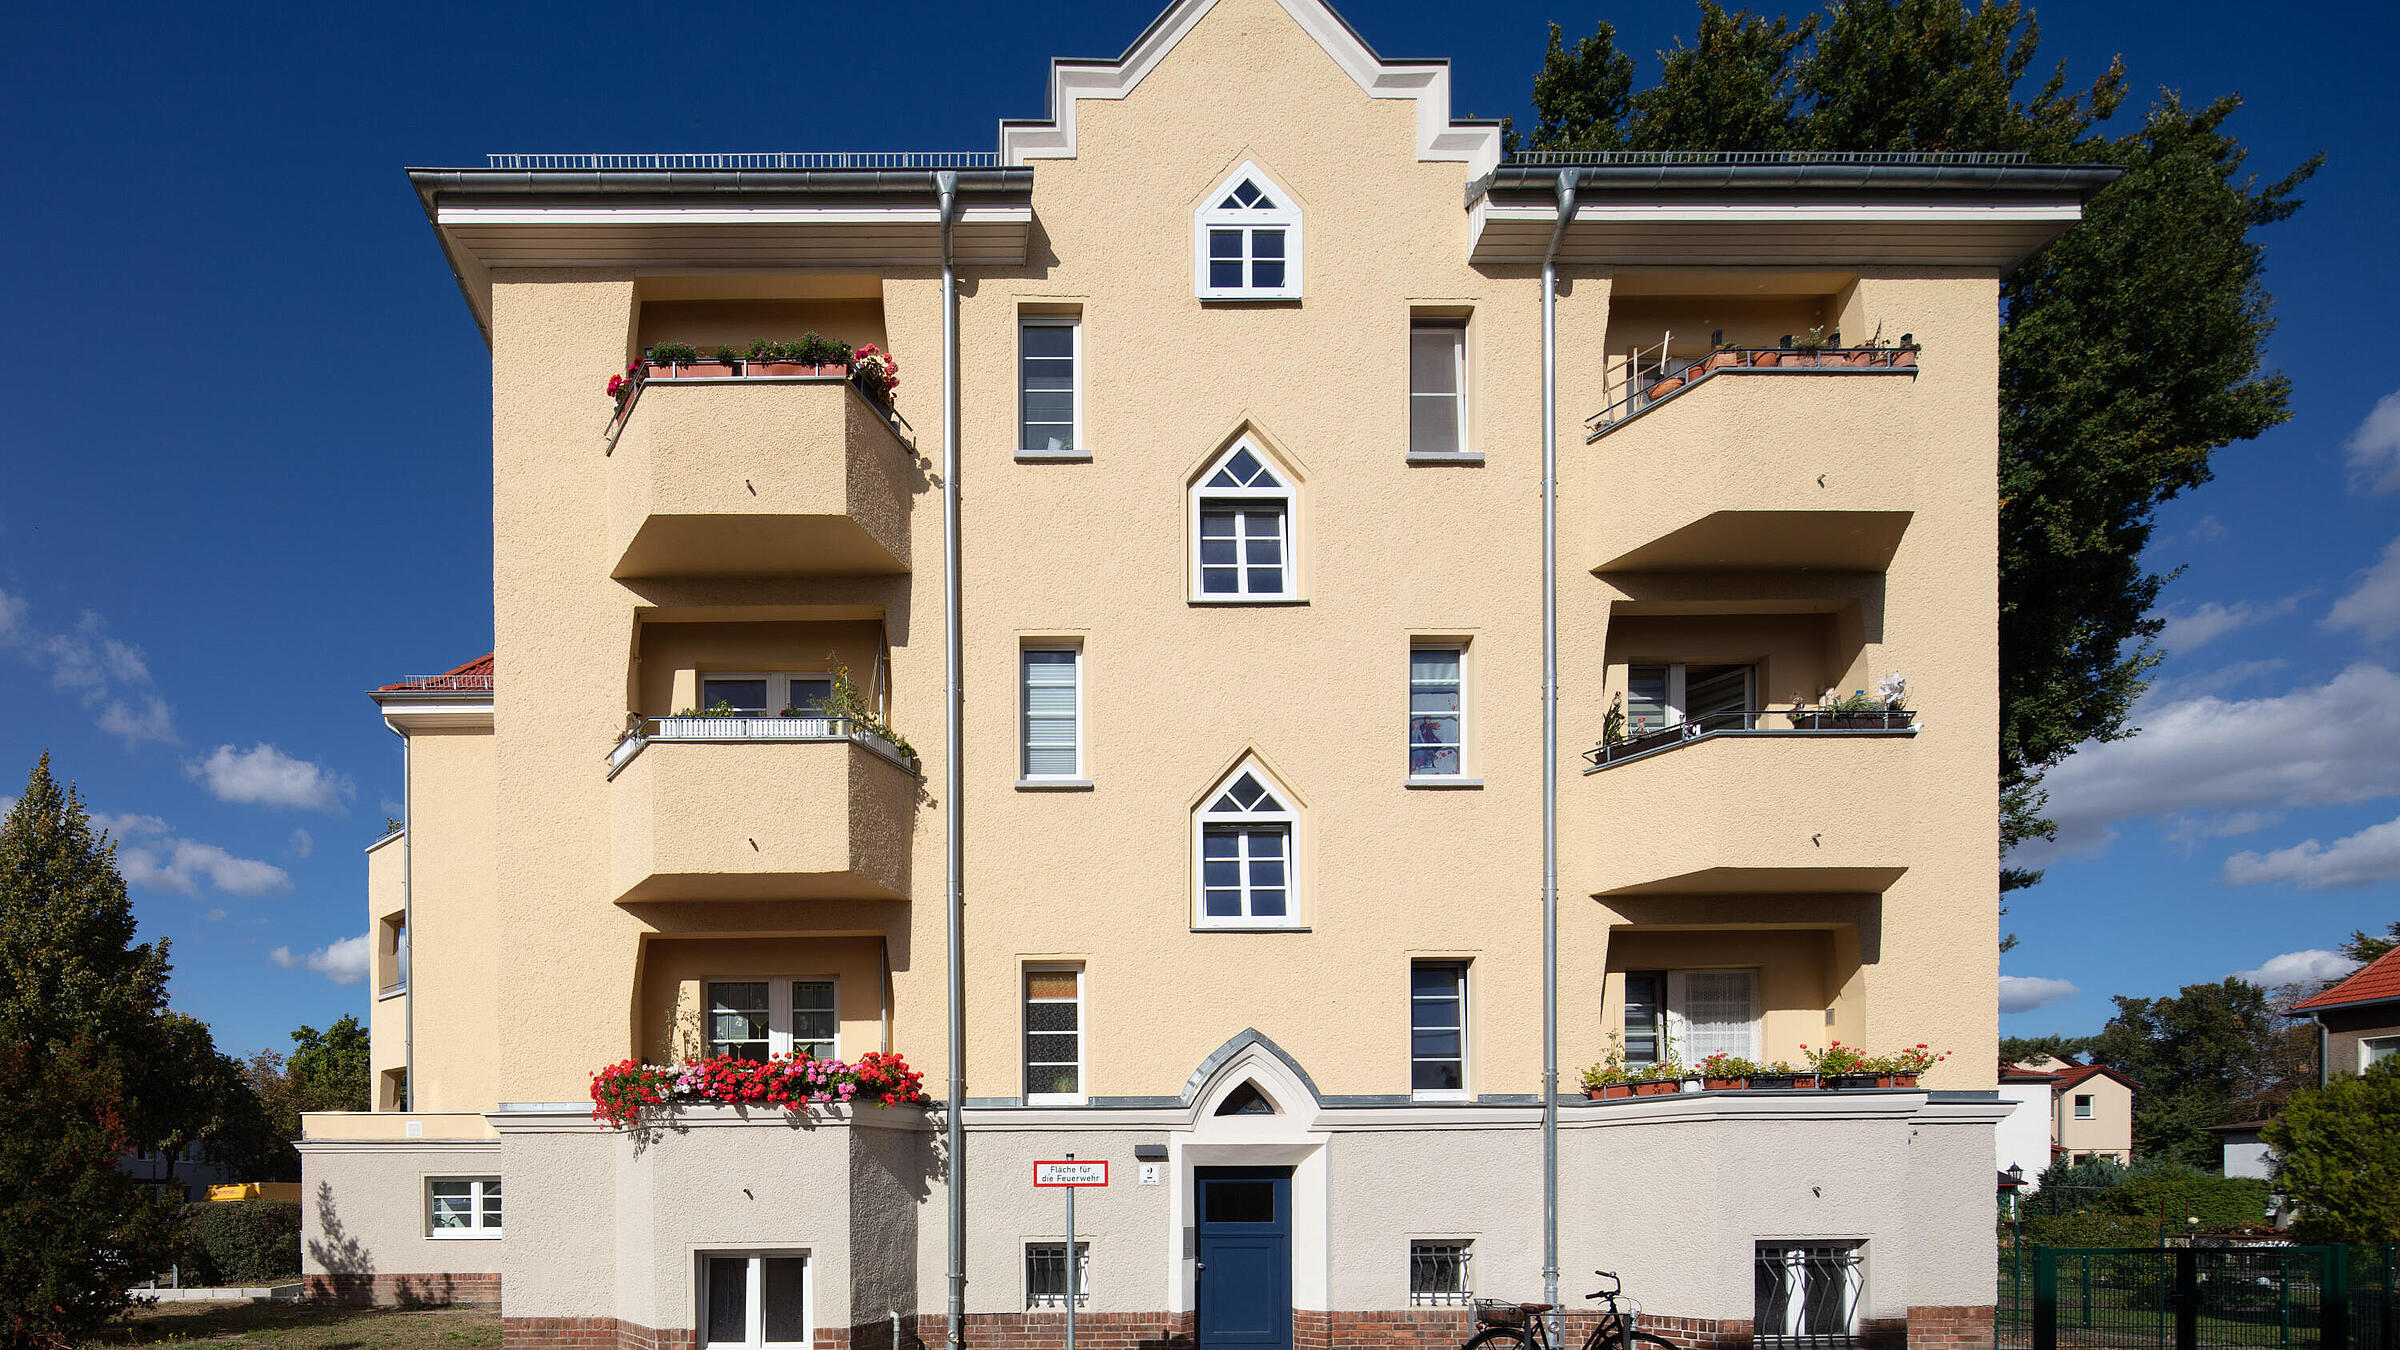 Außenaufnahme zeigt die frisch renovierte, hübsche Fassade eines 1929 gebauten Mehrfamilienhauses in der Romain-Rolland-Straße.